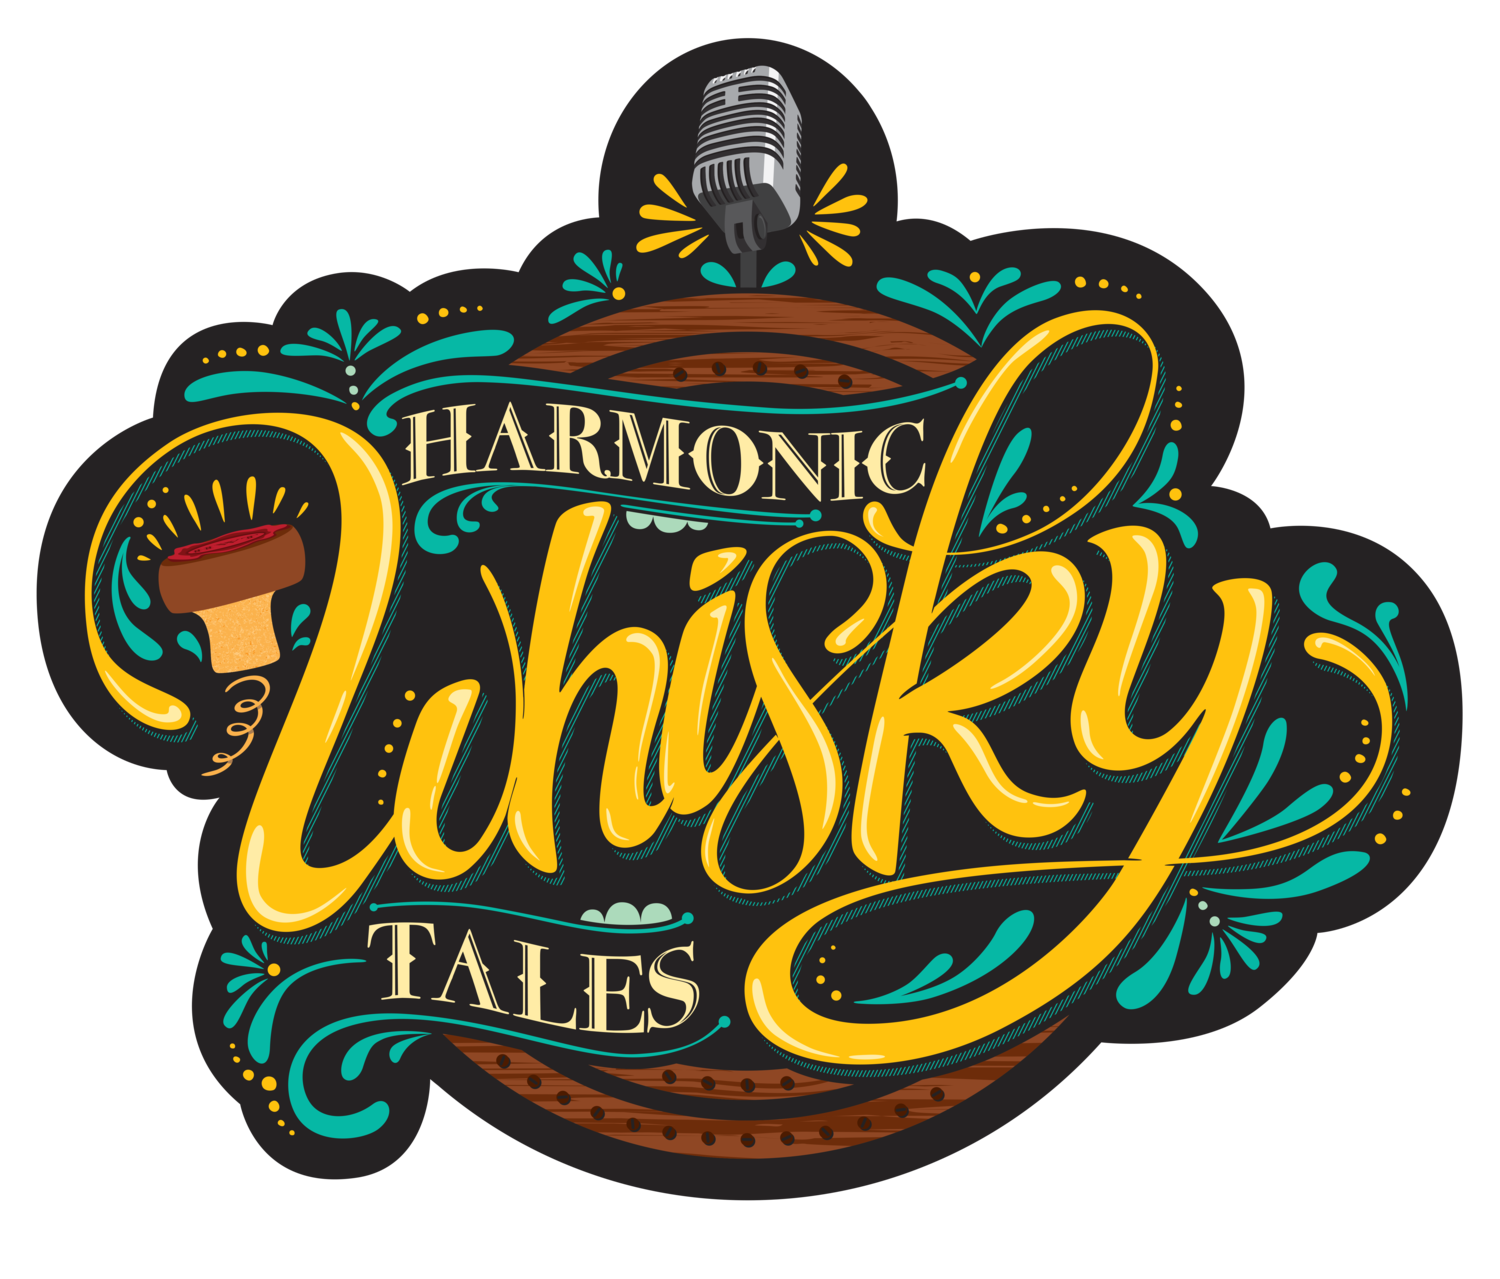 Harmonic Whisky Tales